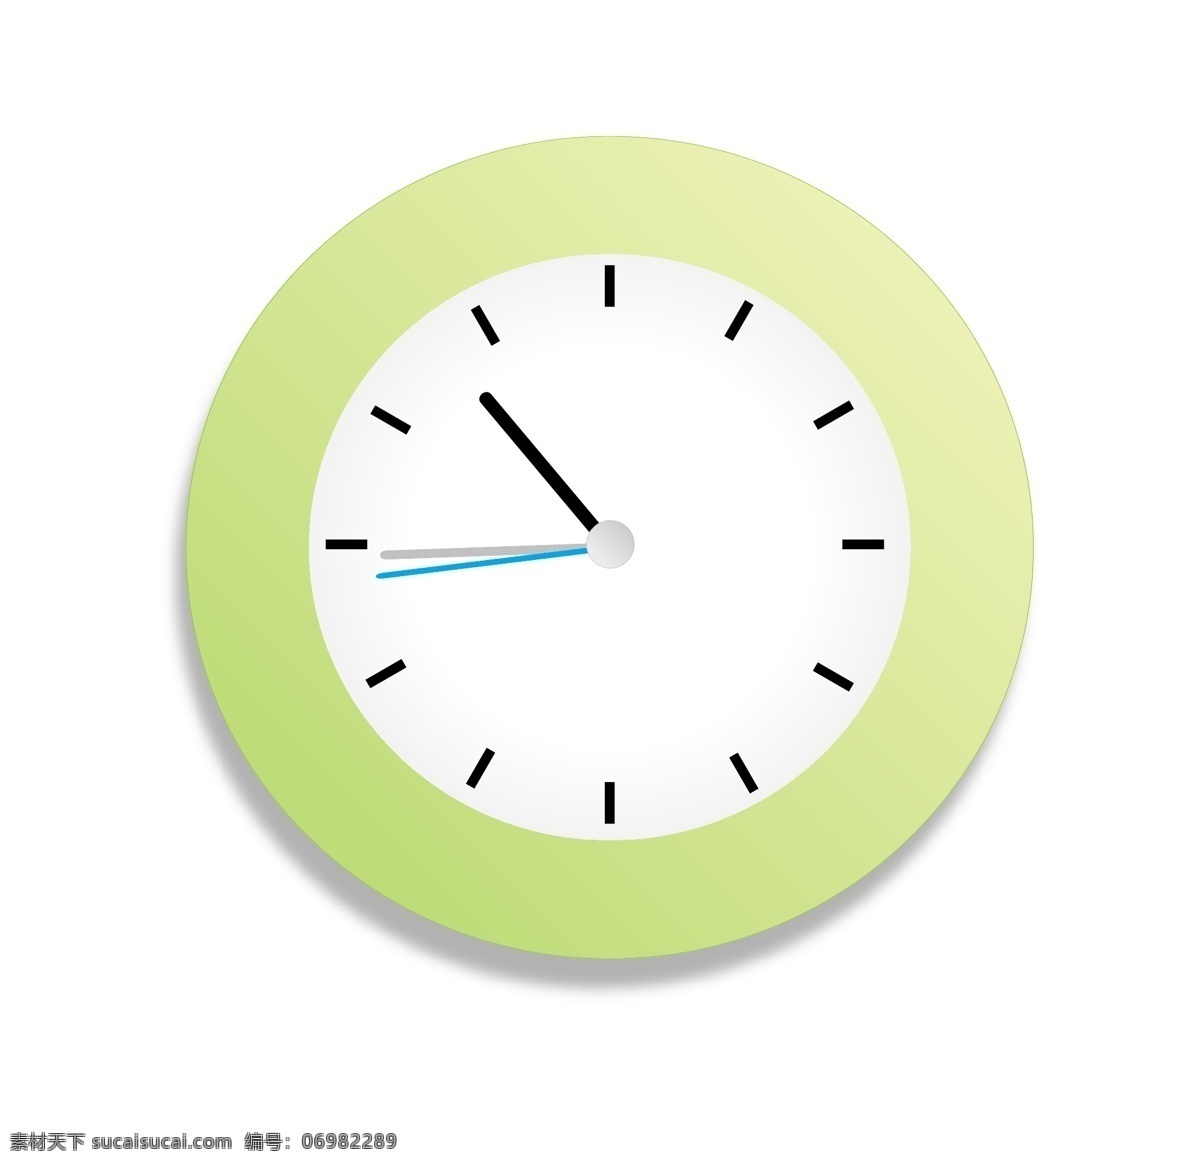 时钟向量 时钟 时钟矢量图标 时钟的脸向量 向量时钟 闹钟矢量ai 图标 矢量 矢量图 墙上的时钟 时钟的eps 数字钟的自由 时钟矢量图像 矢量时钟图标 illustrator 砂 其他矢量图